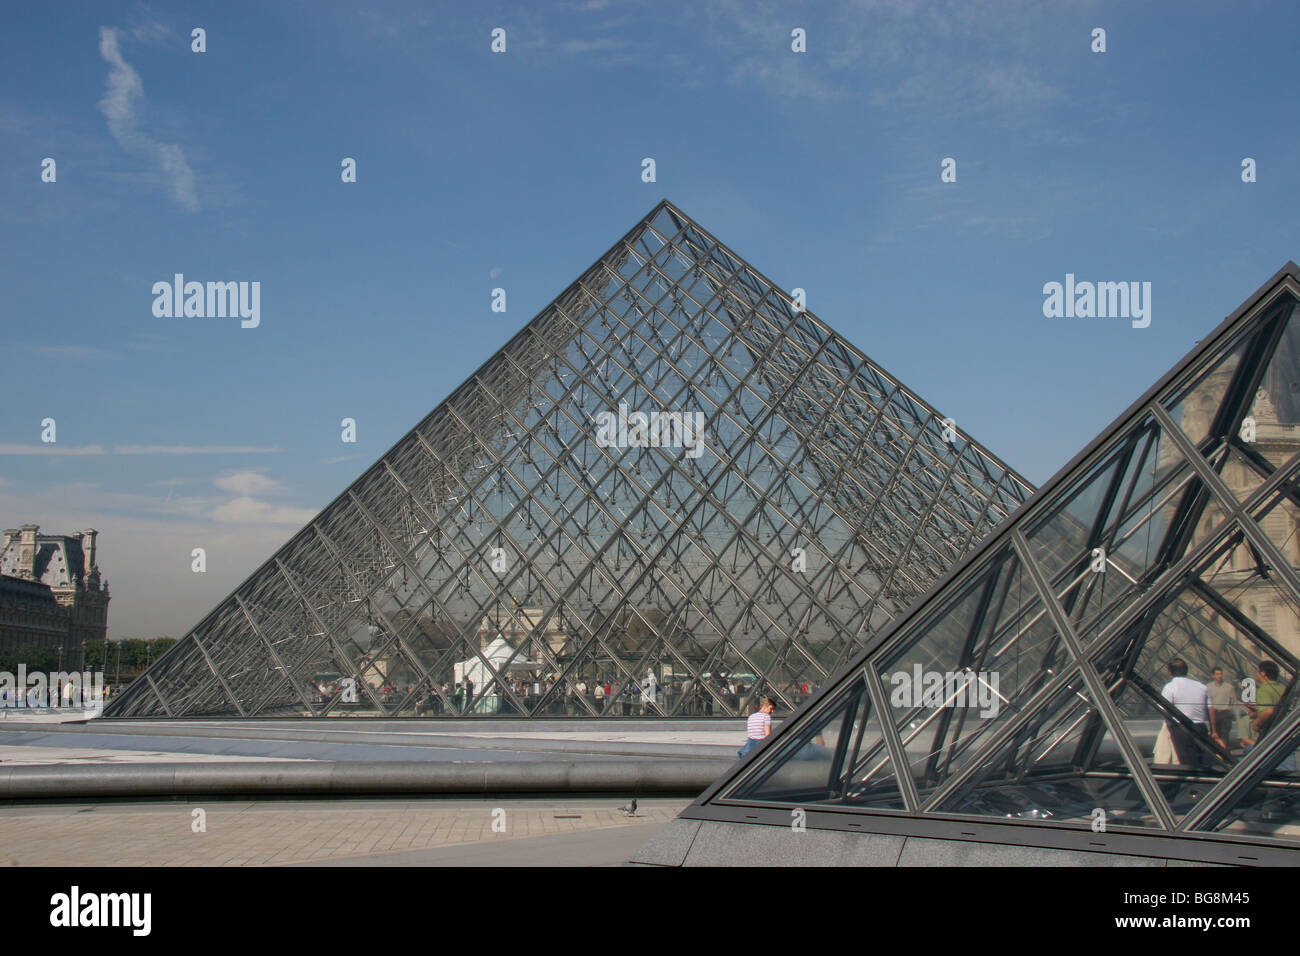 Il museo del Louvre. La grande piramide in vetro. Il piramids progettato dall architetto Leone Ming Pei, nel 1981. Parigi. La Francia. L'Europa. Foto Stock